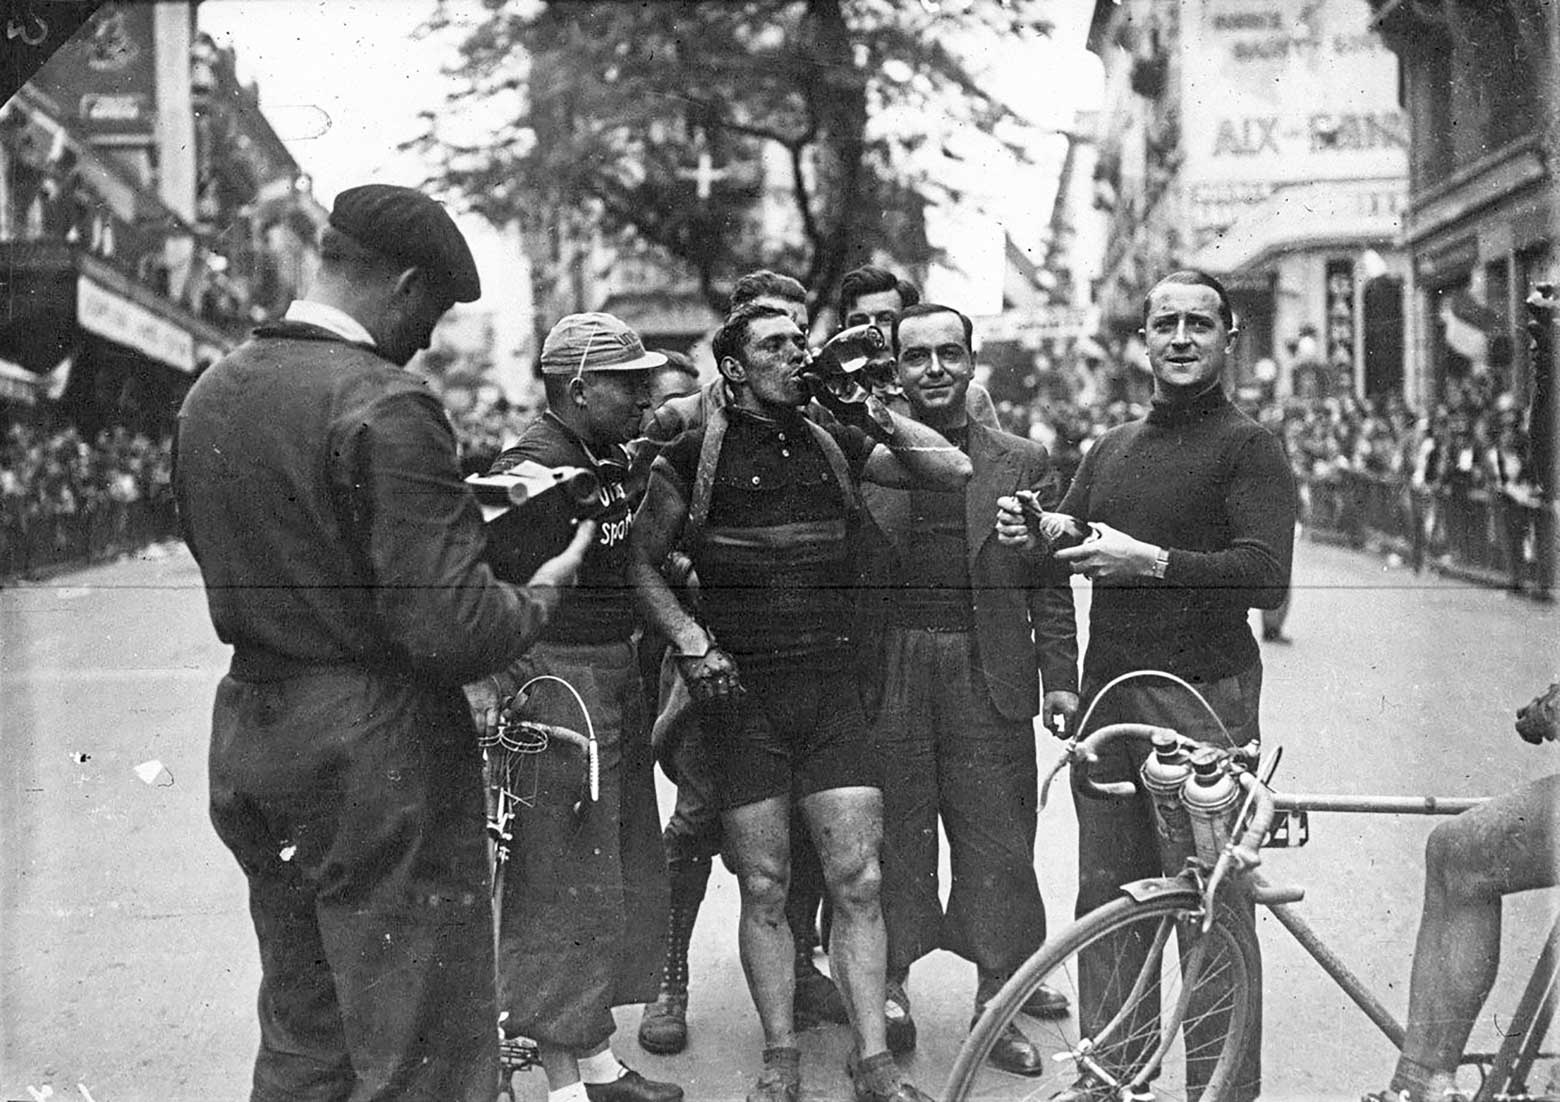 Eloi Muelenberg - 1936 Tour de France Aix-les-Bains main image